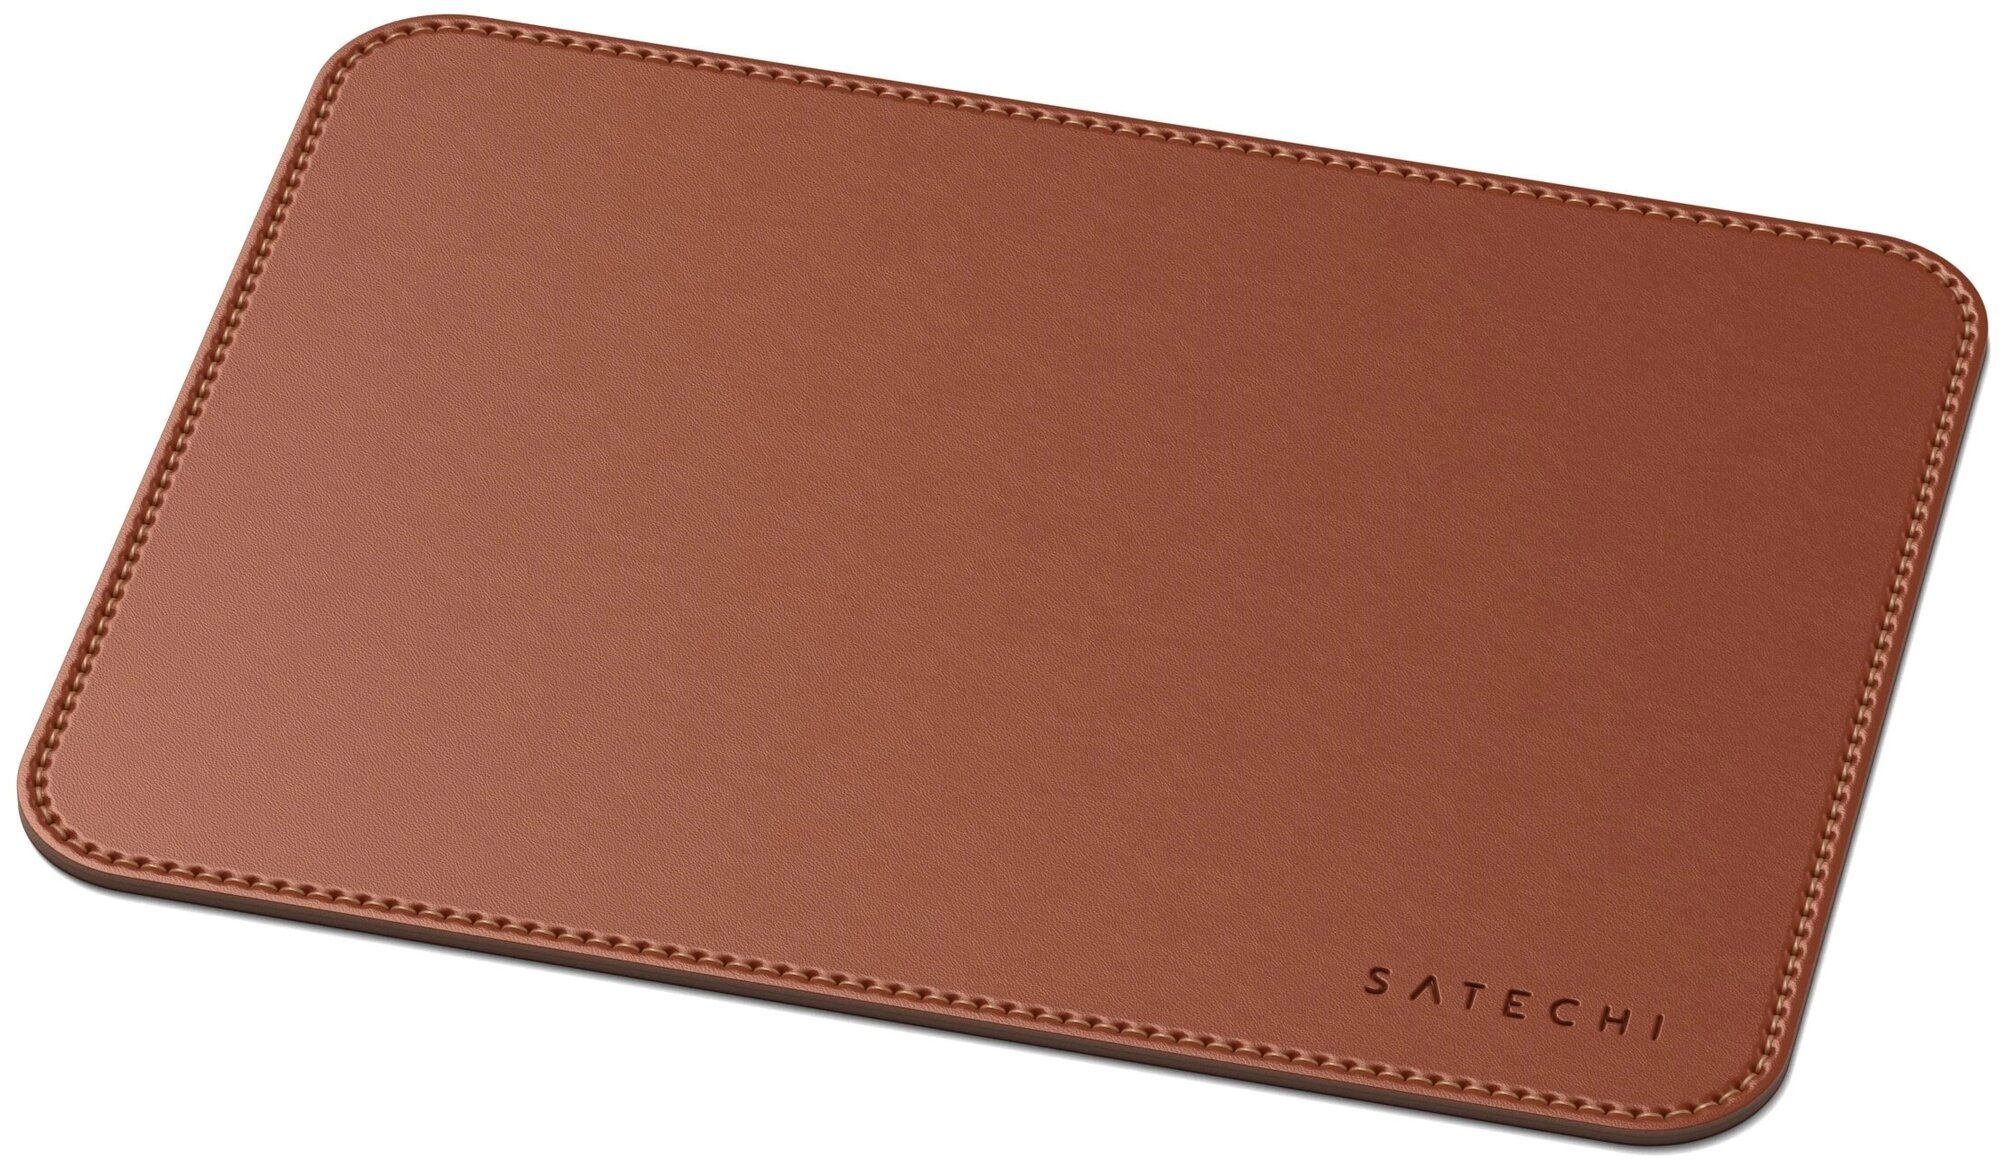 Коврик Satechi Eco Leather Mouse Pad Размер 25 x 19 см. коричневый